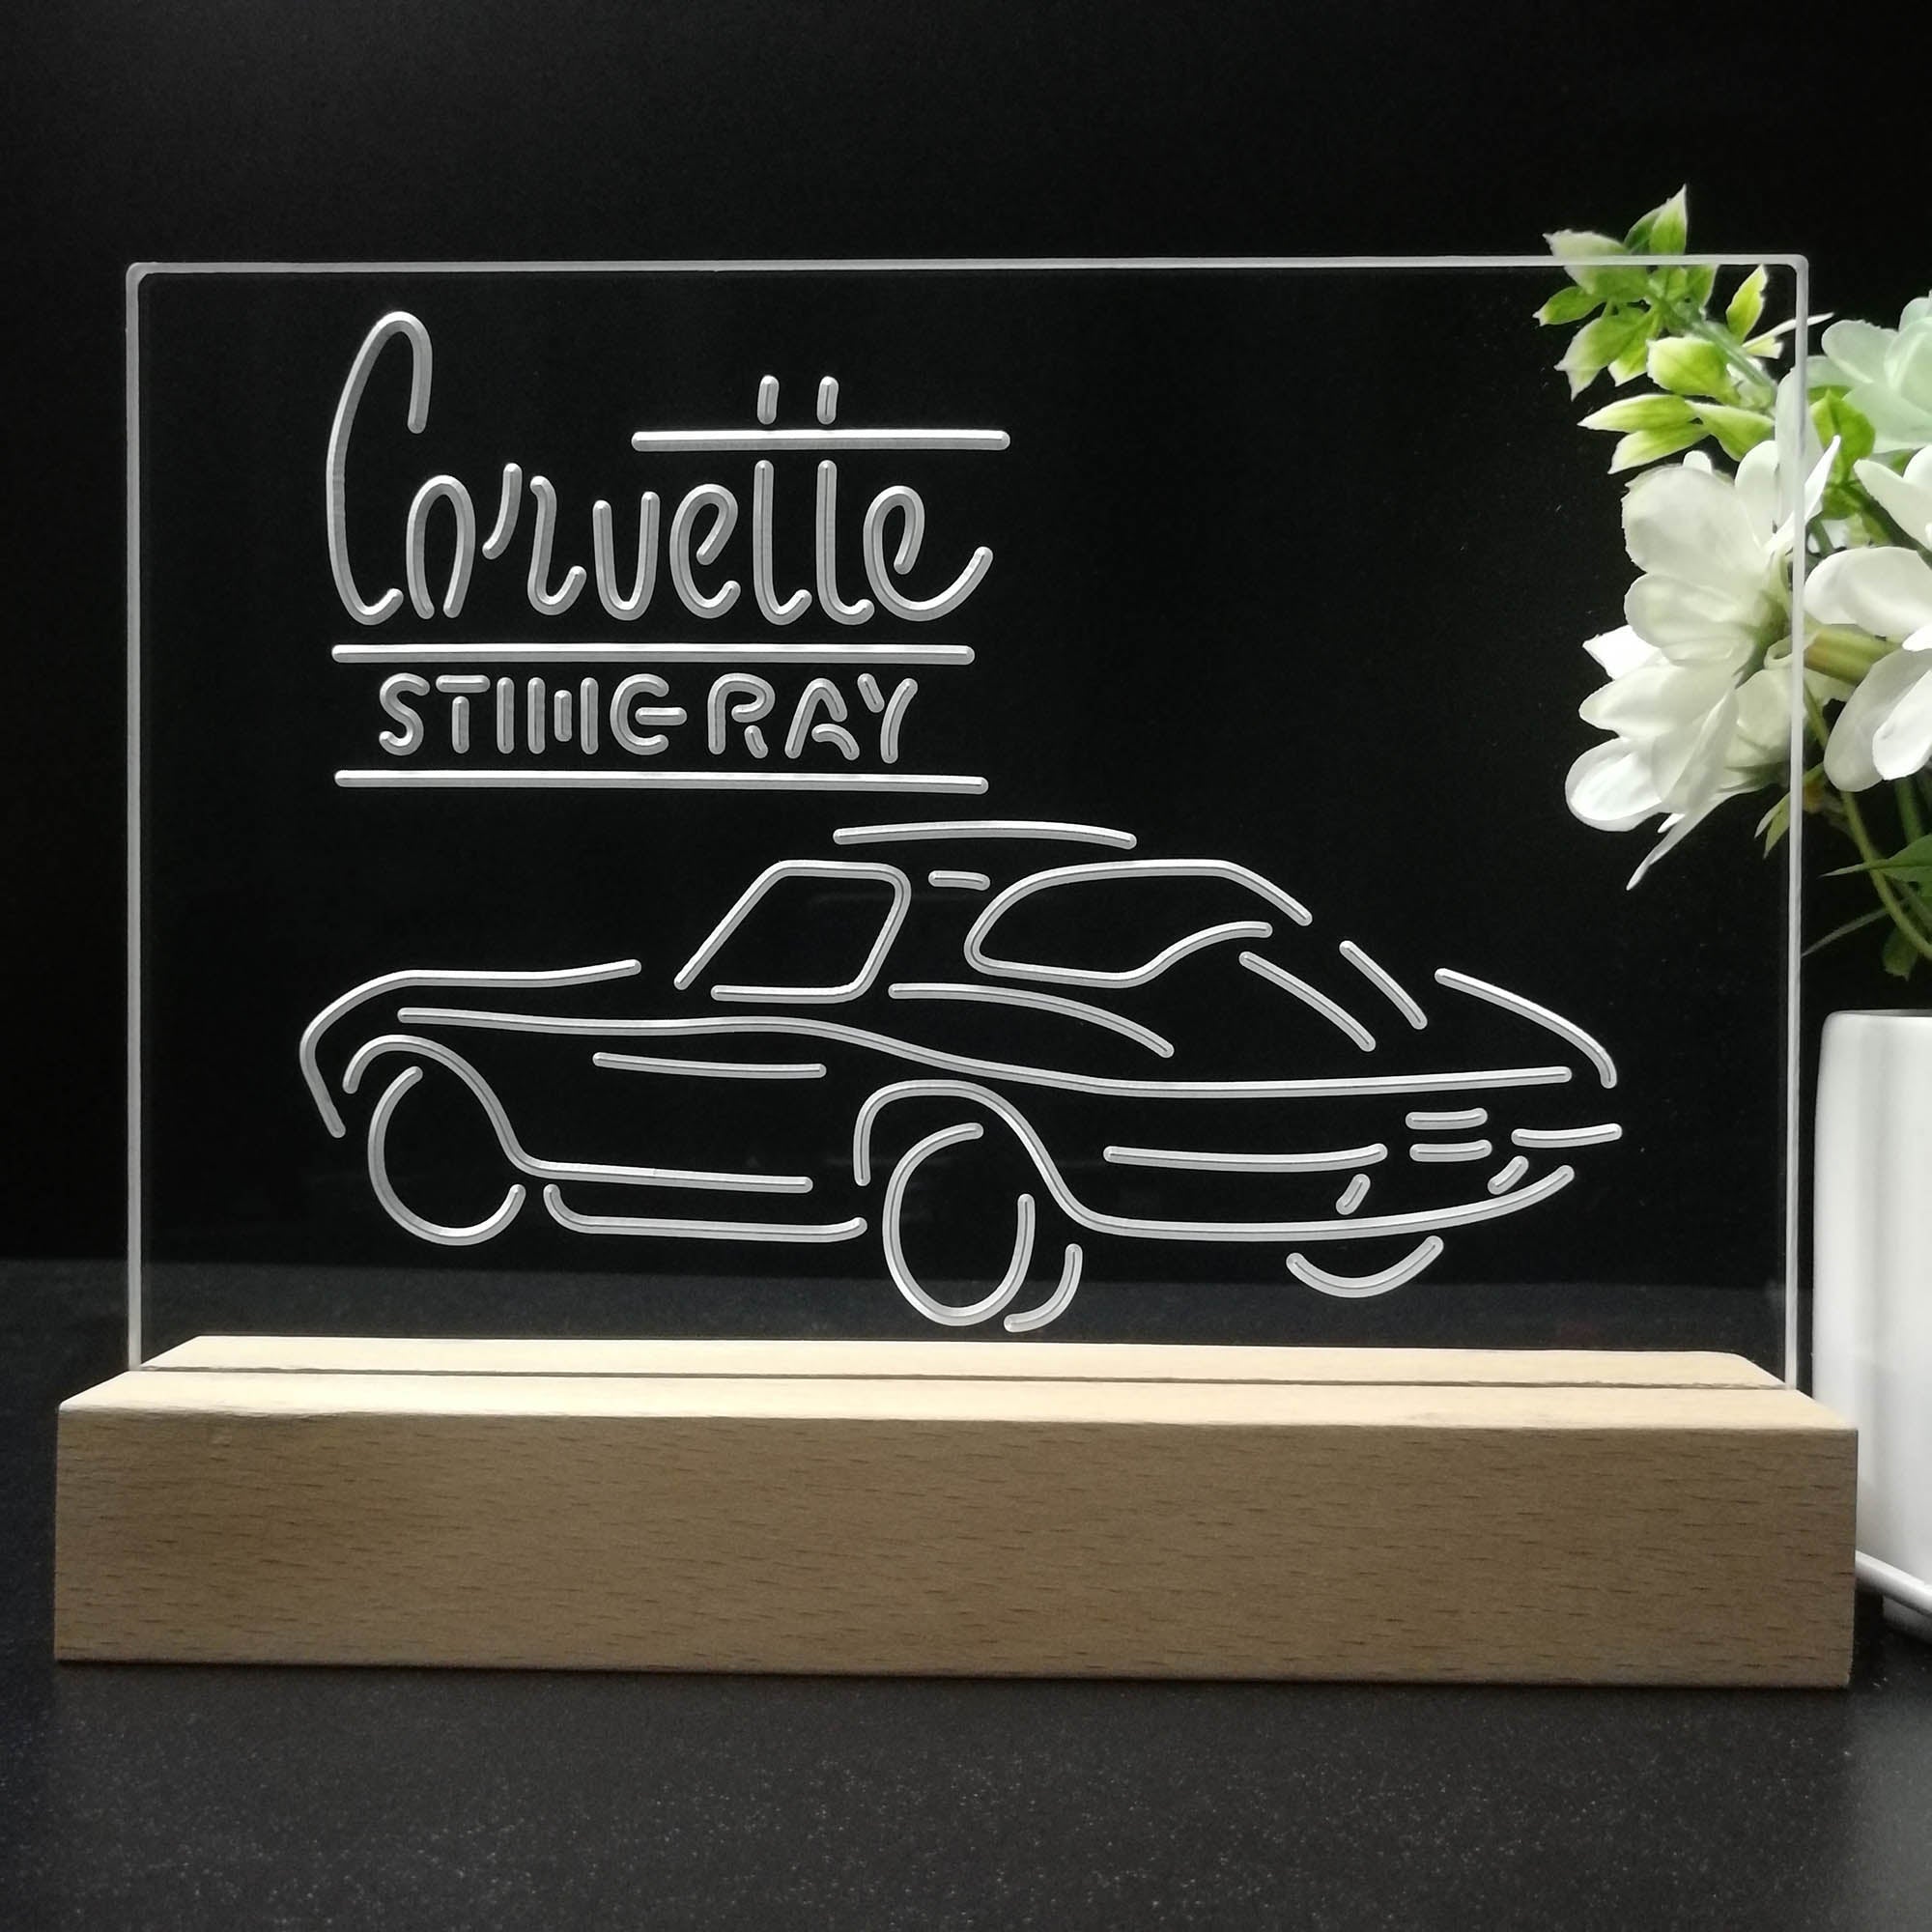 Corvette Sting Ray 3D LED Illusion Night Light